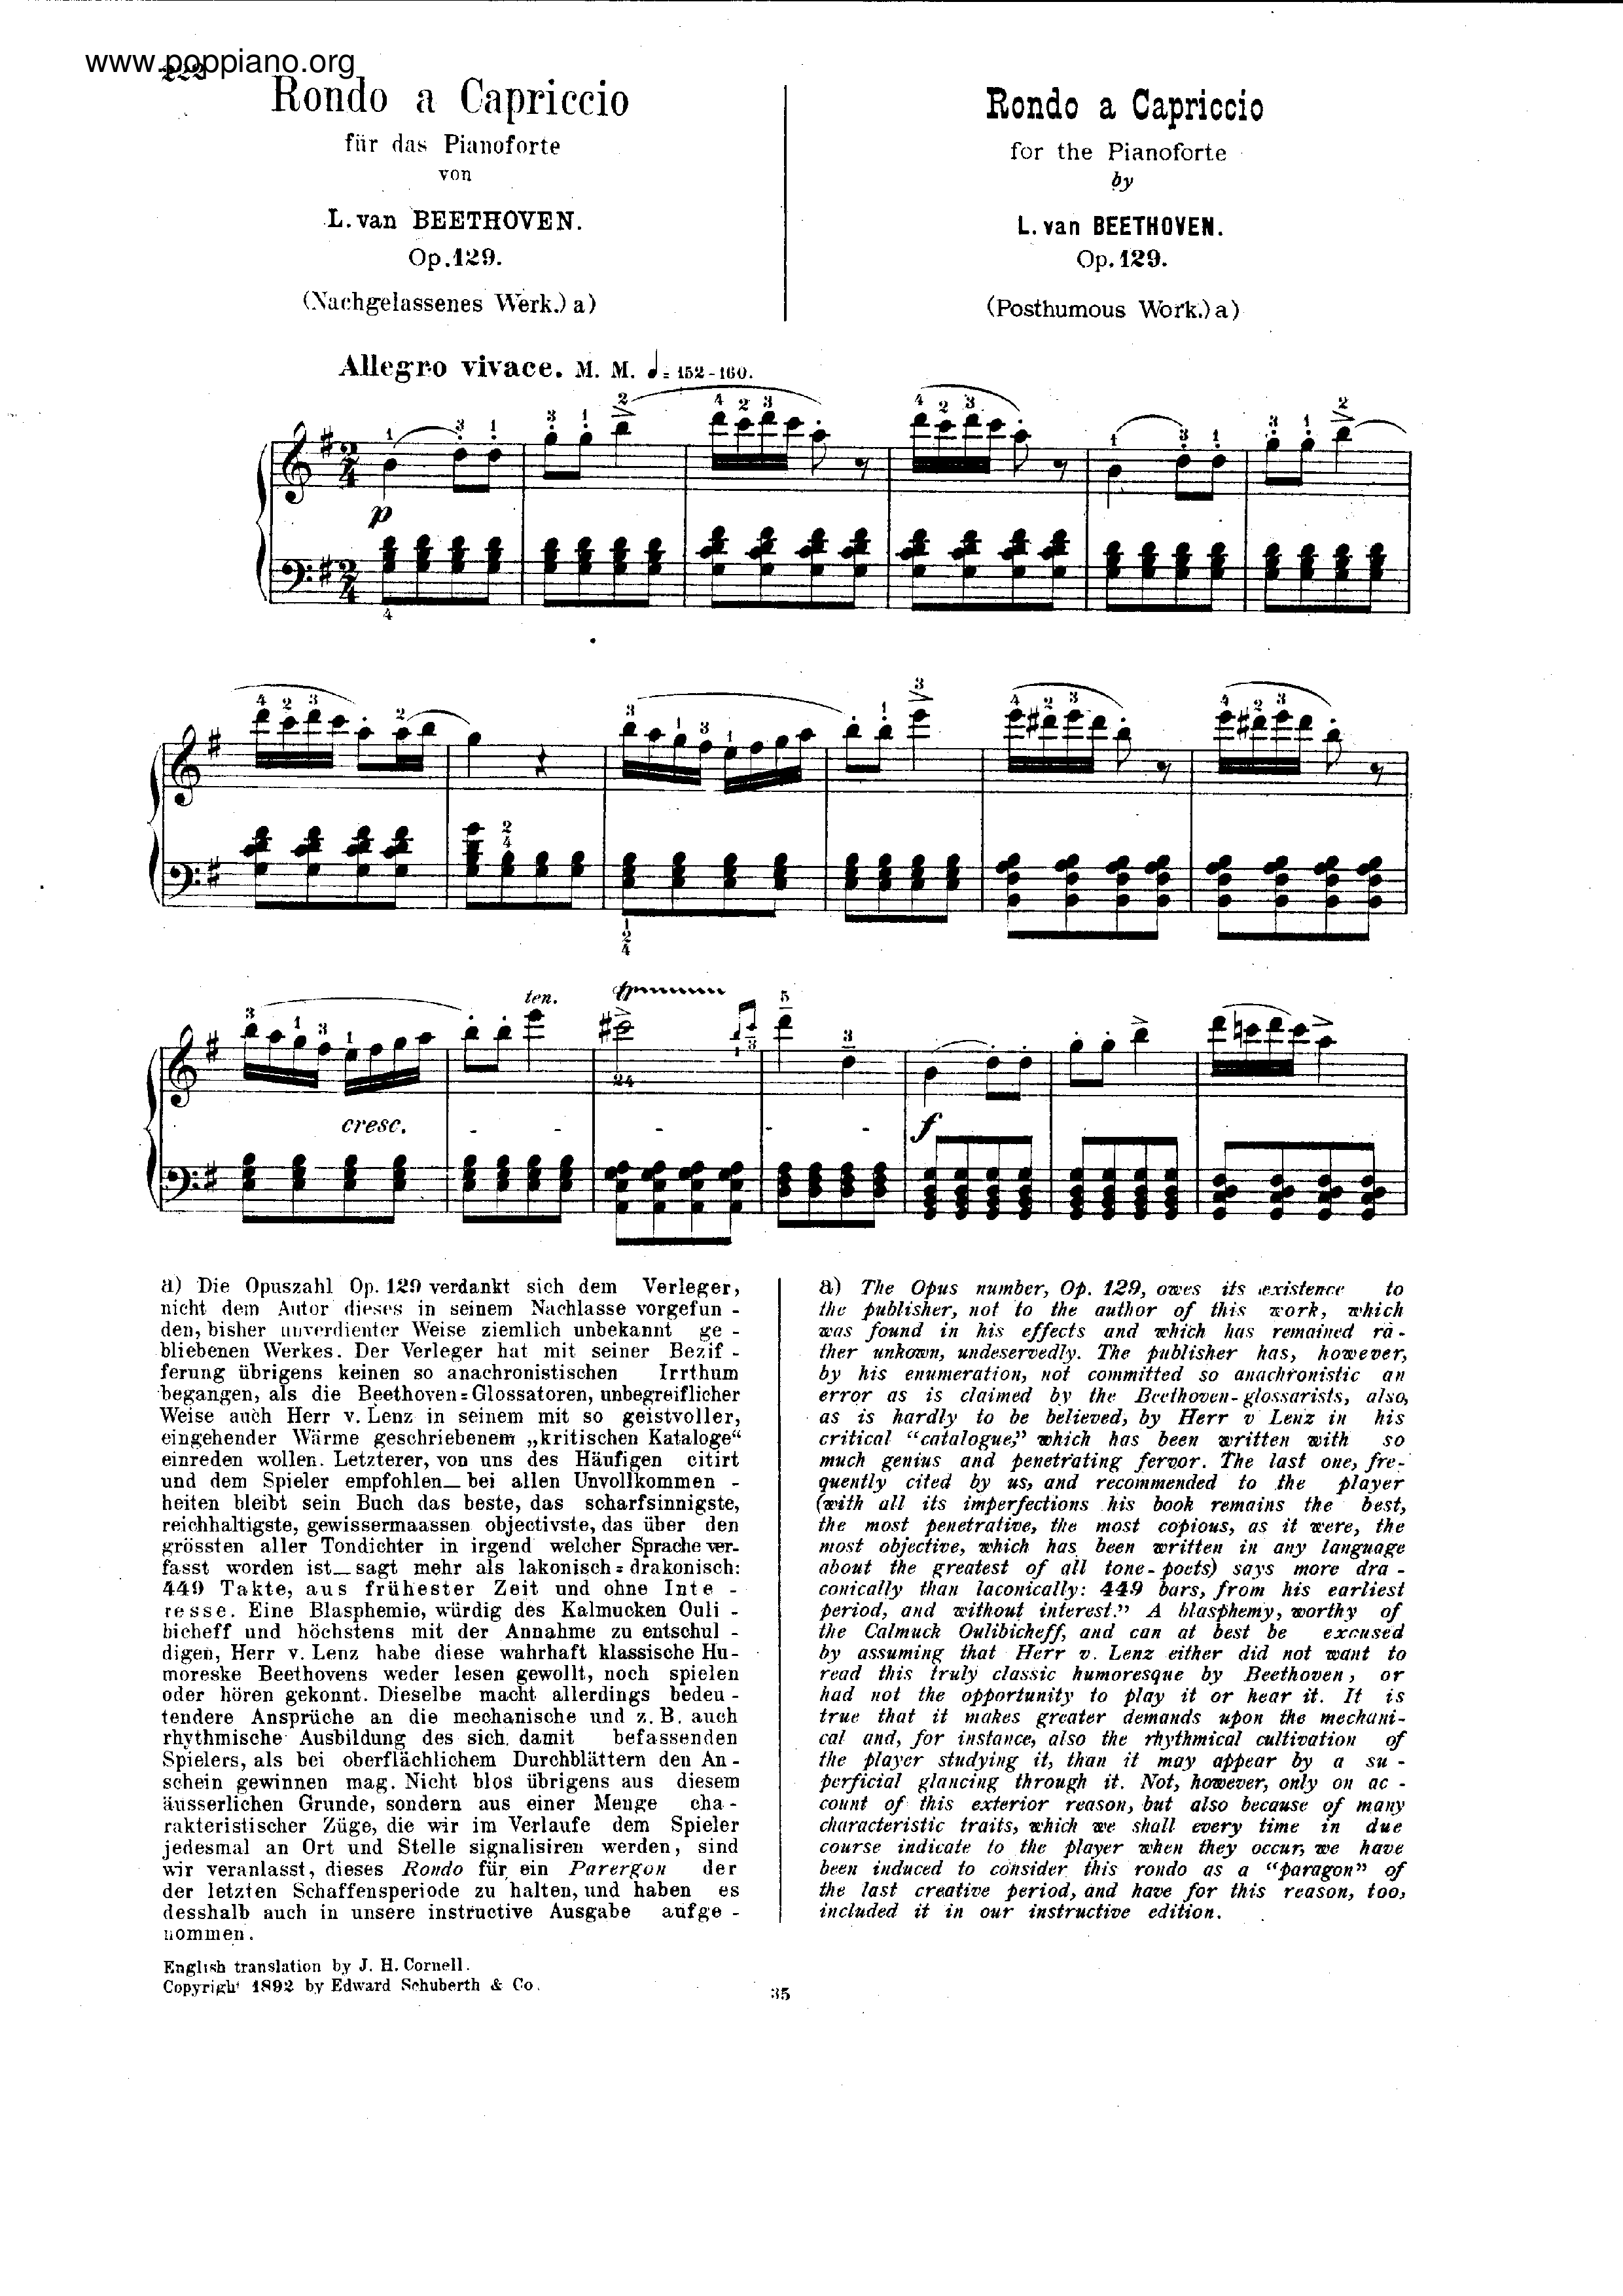 Rondo a Capriccio Op. 129 Score